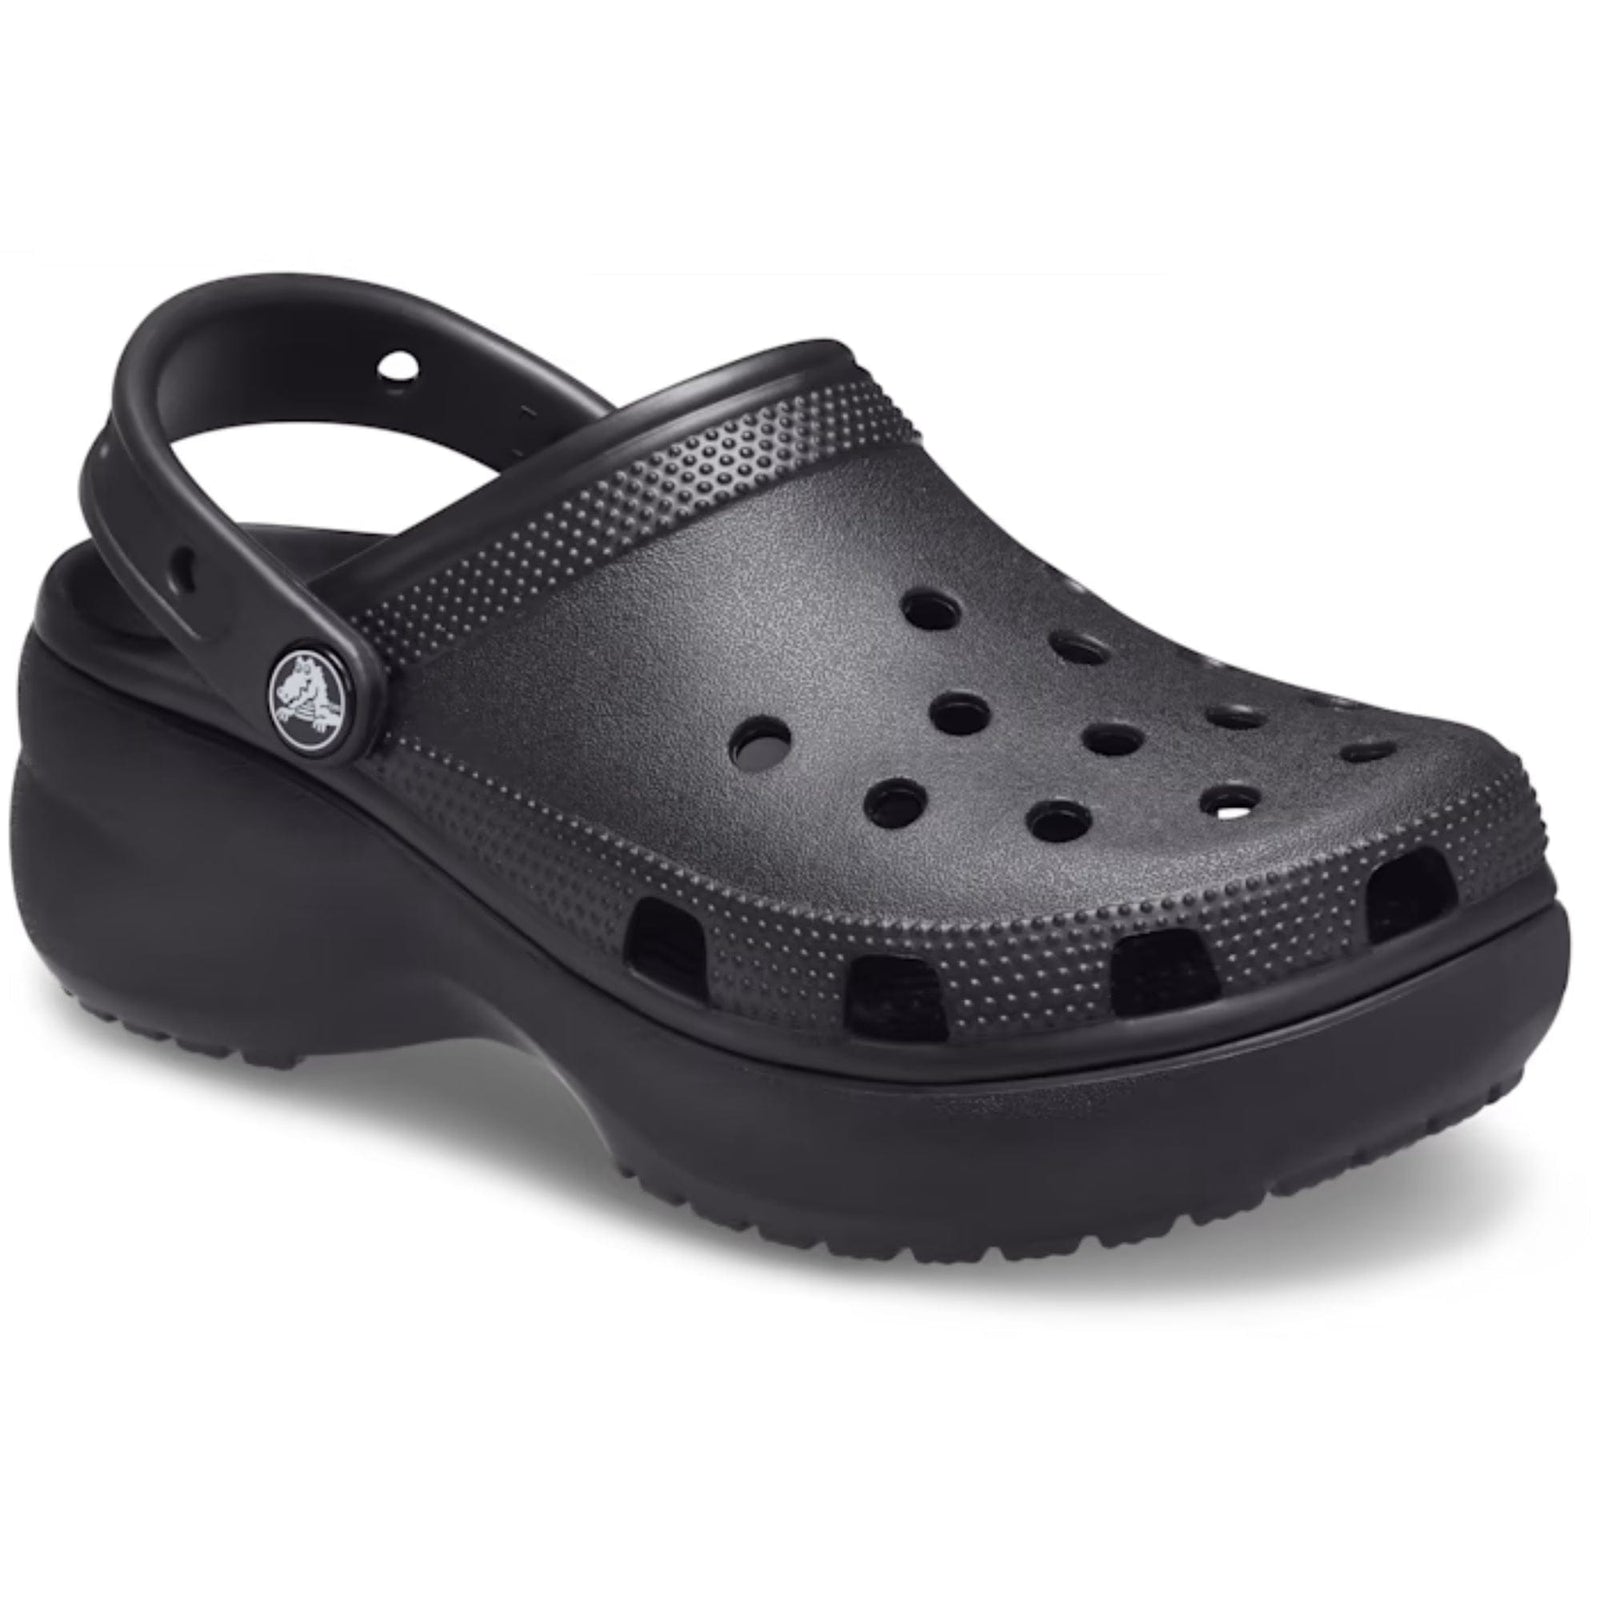 Crocs Classic Platform Clog in Black